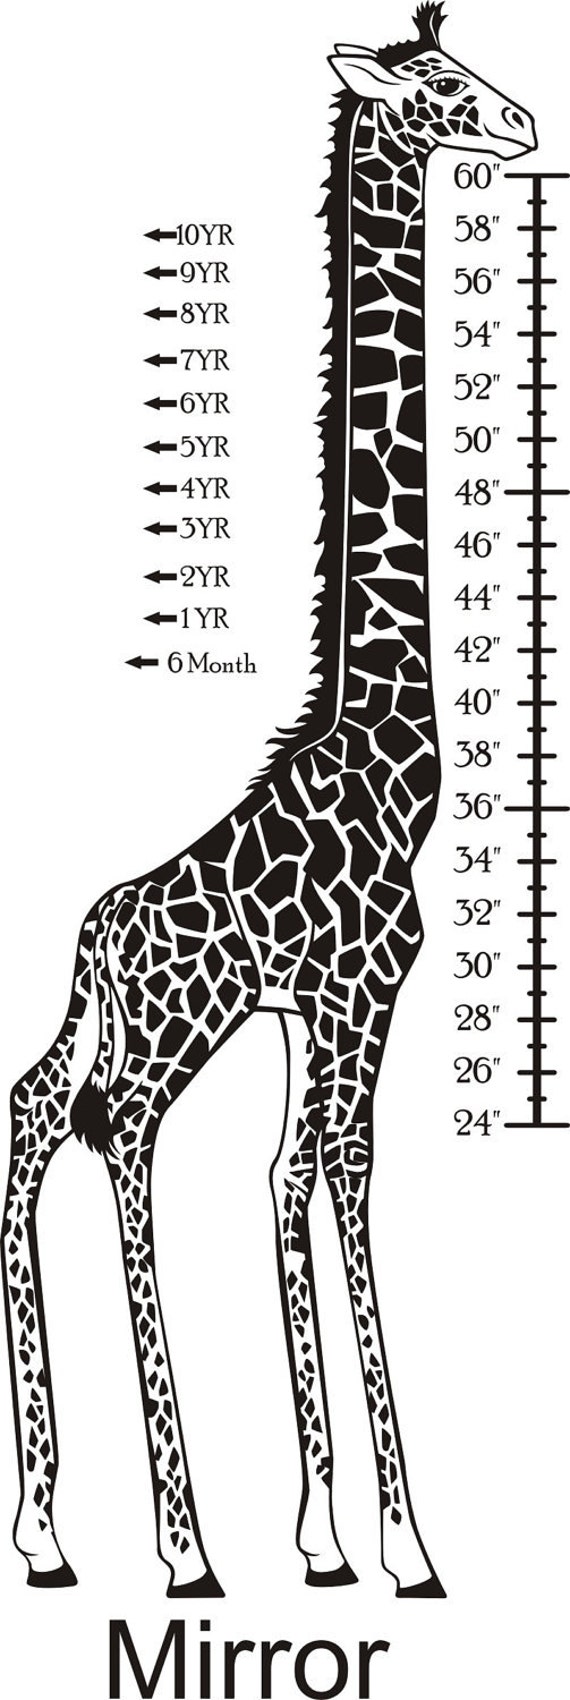 Размер жирафа. Рост жирафа. Жираф высота. Размер жирафа в метрах. На рисунке изображен жираф